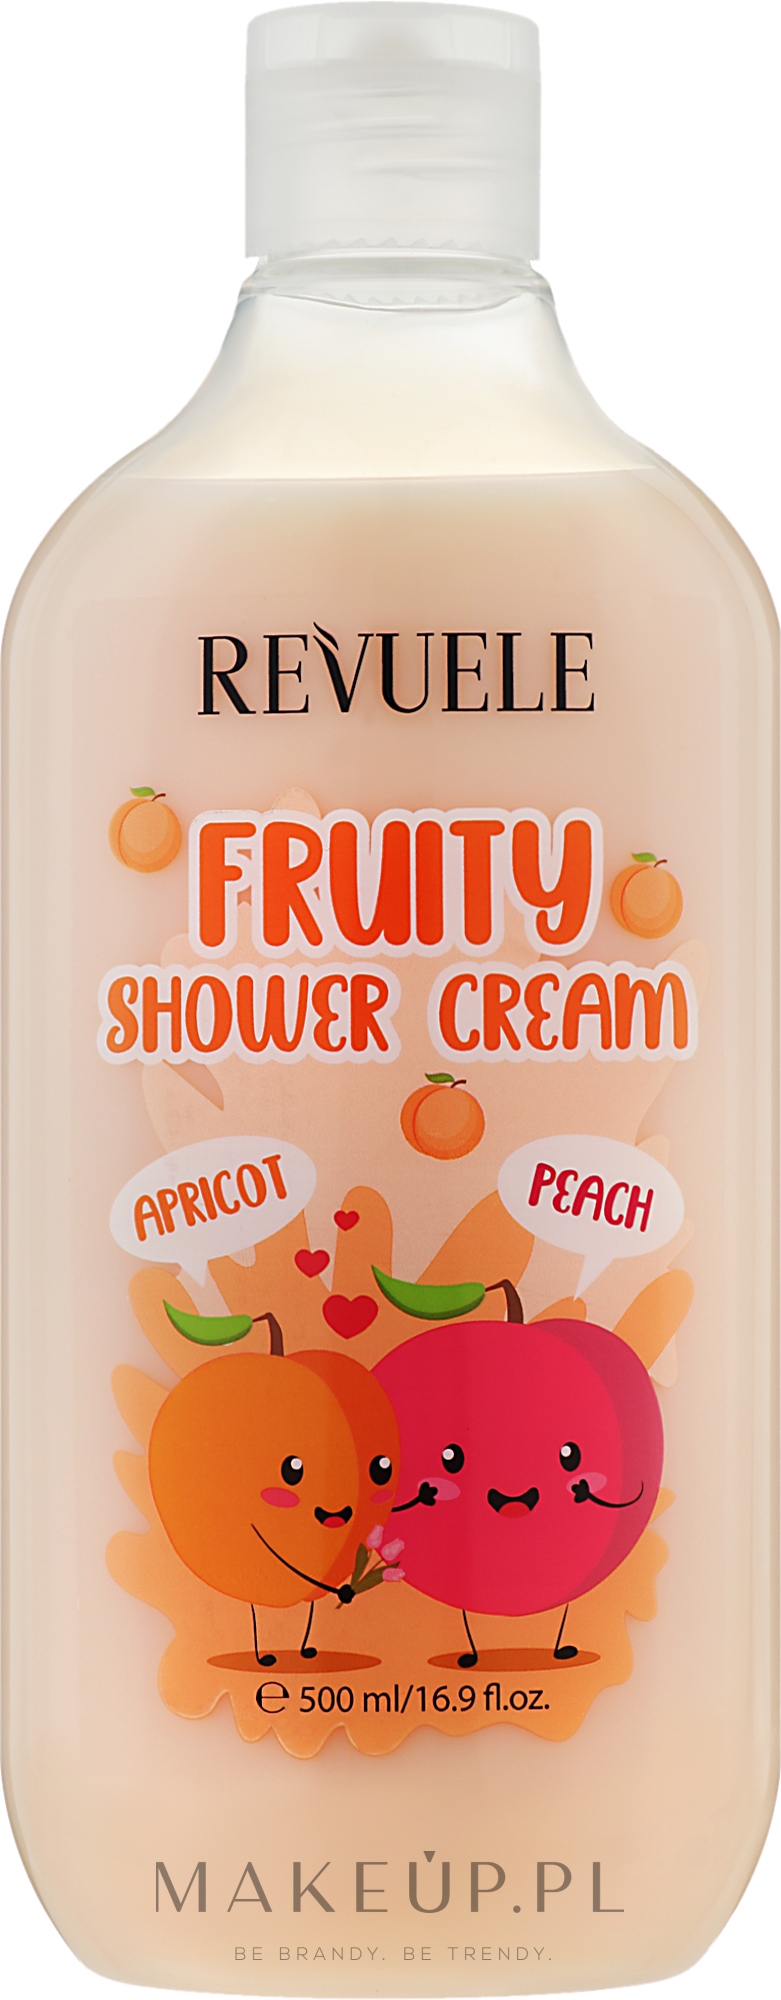 Owocowy krem pod prysznic Morela i brzoskwinia - Revuele Fruity Shower Cream Apricot and Peach — Zdjęcie 500 ml